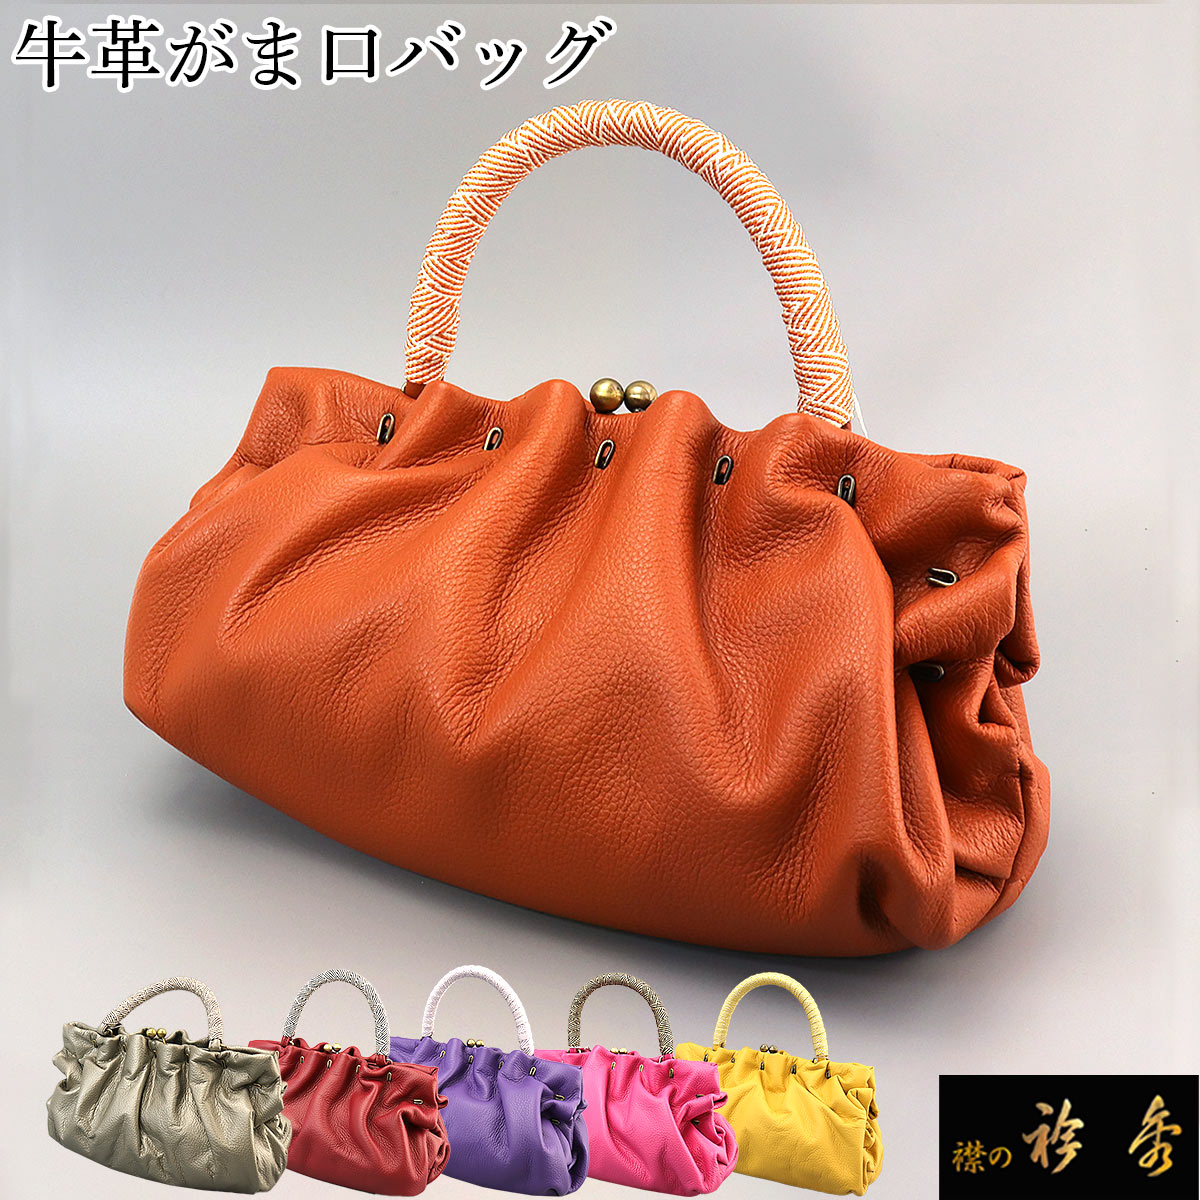 衿秀 公式 バッグ 和装 着物 ばっぐ bag がま口 正絹 皮 牛革 日本製